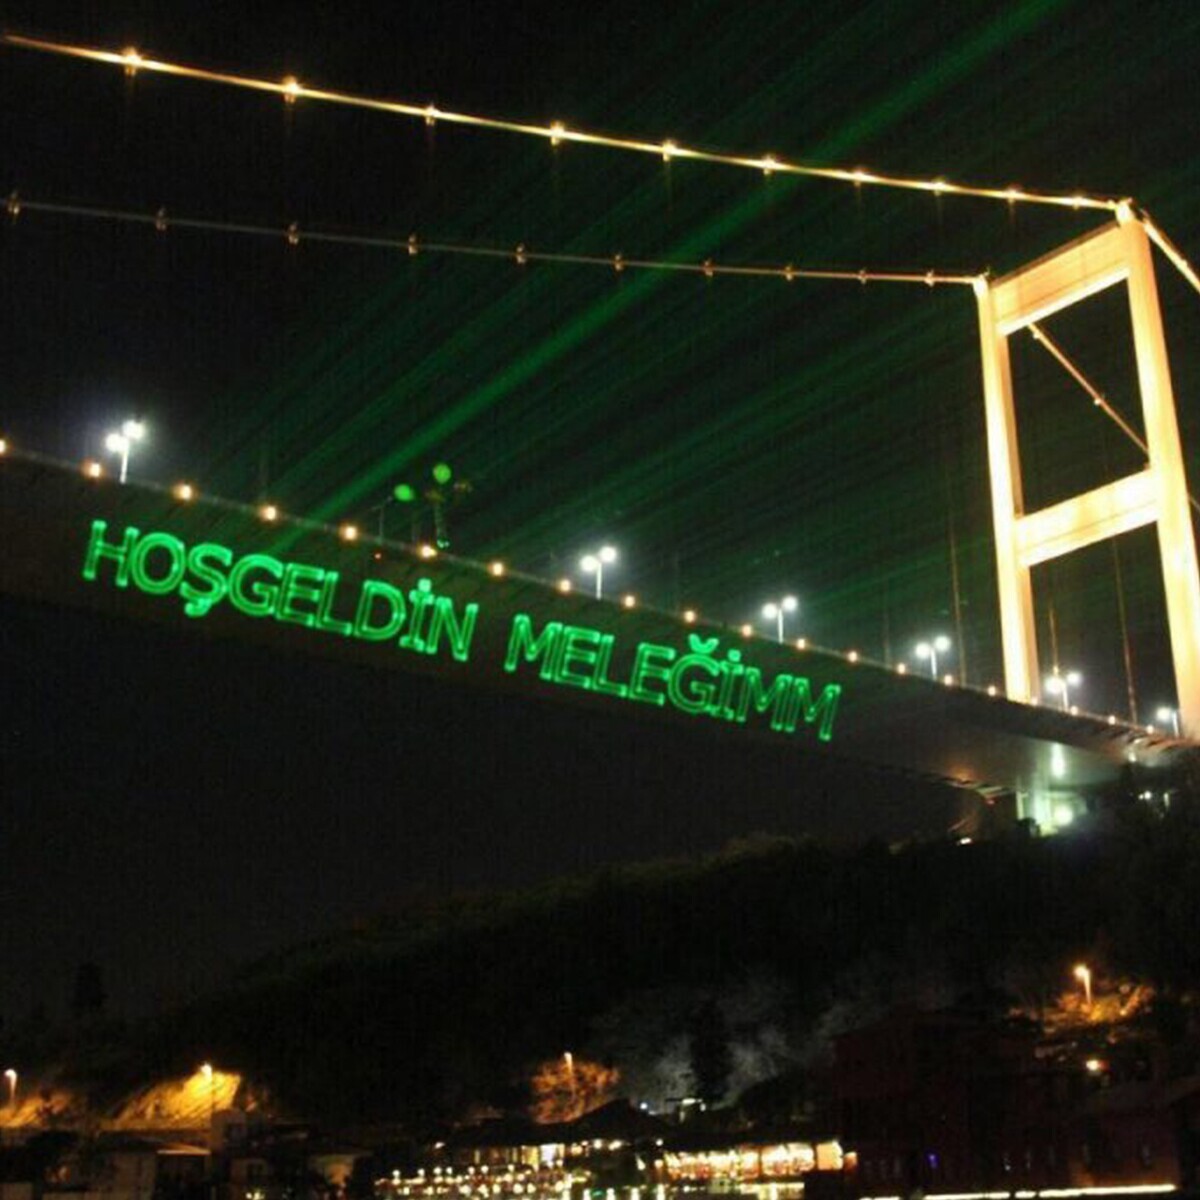 Bosphorus Organization’dan İstanbul Boğazında Sevdiklerinize Özel Sürpriz Hediye Lazer Yazısı